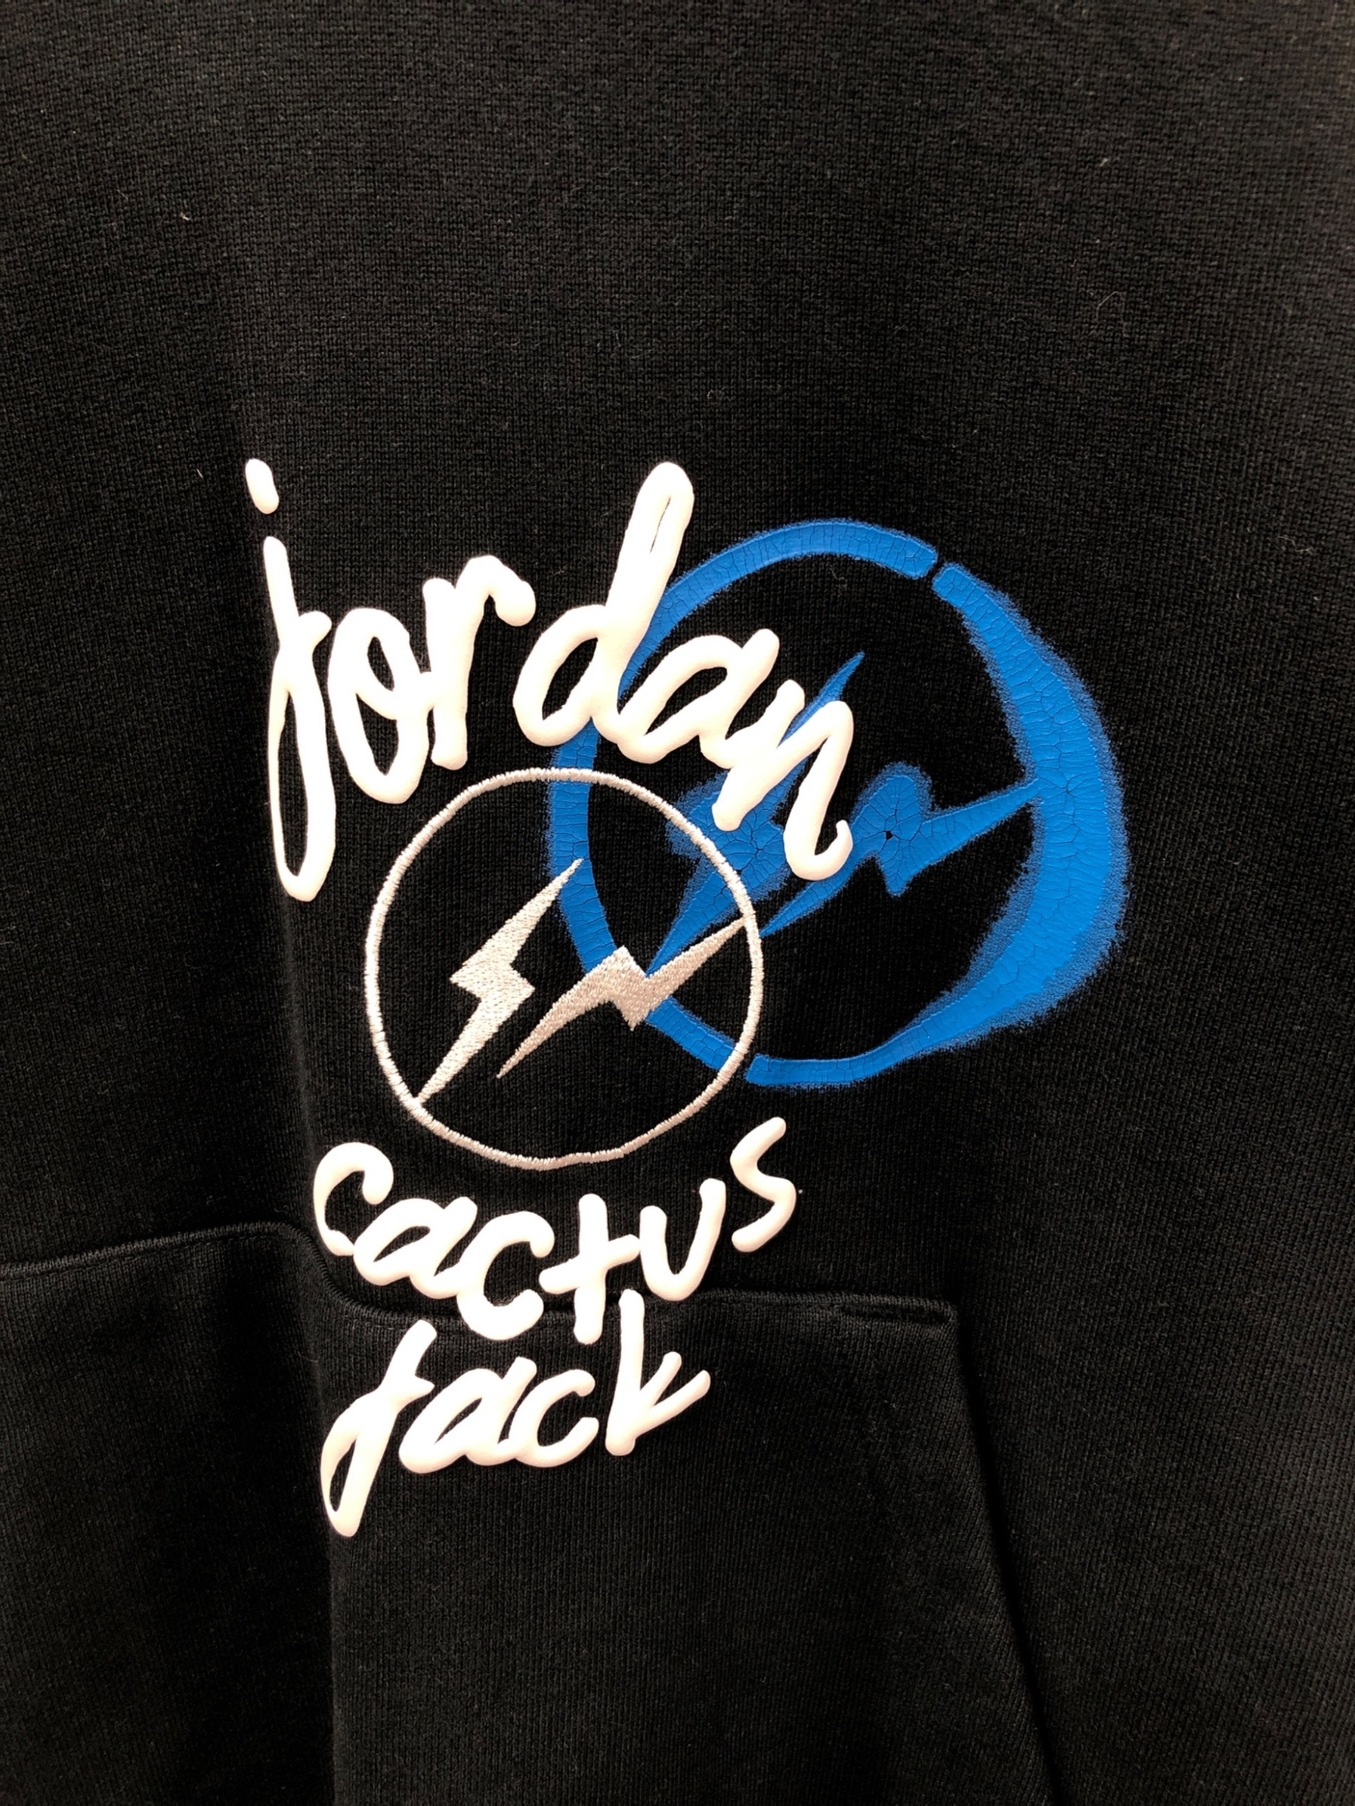 【新品】JORDAN × Fragment × cactus jack フーディ2015SM